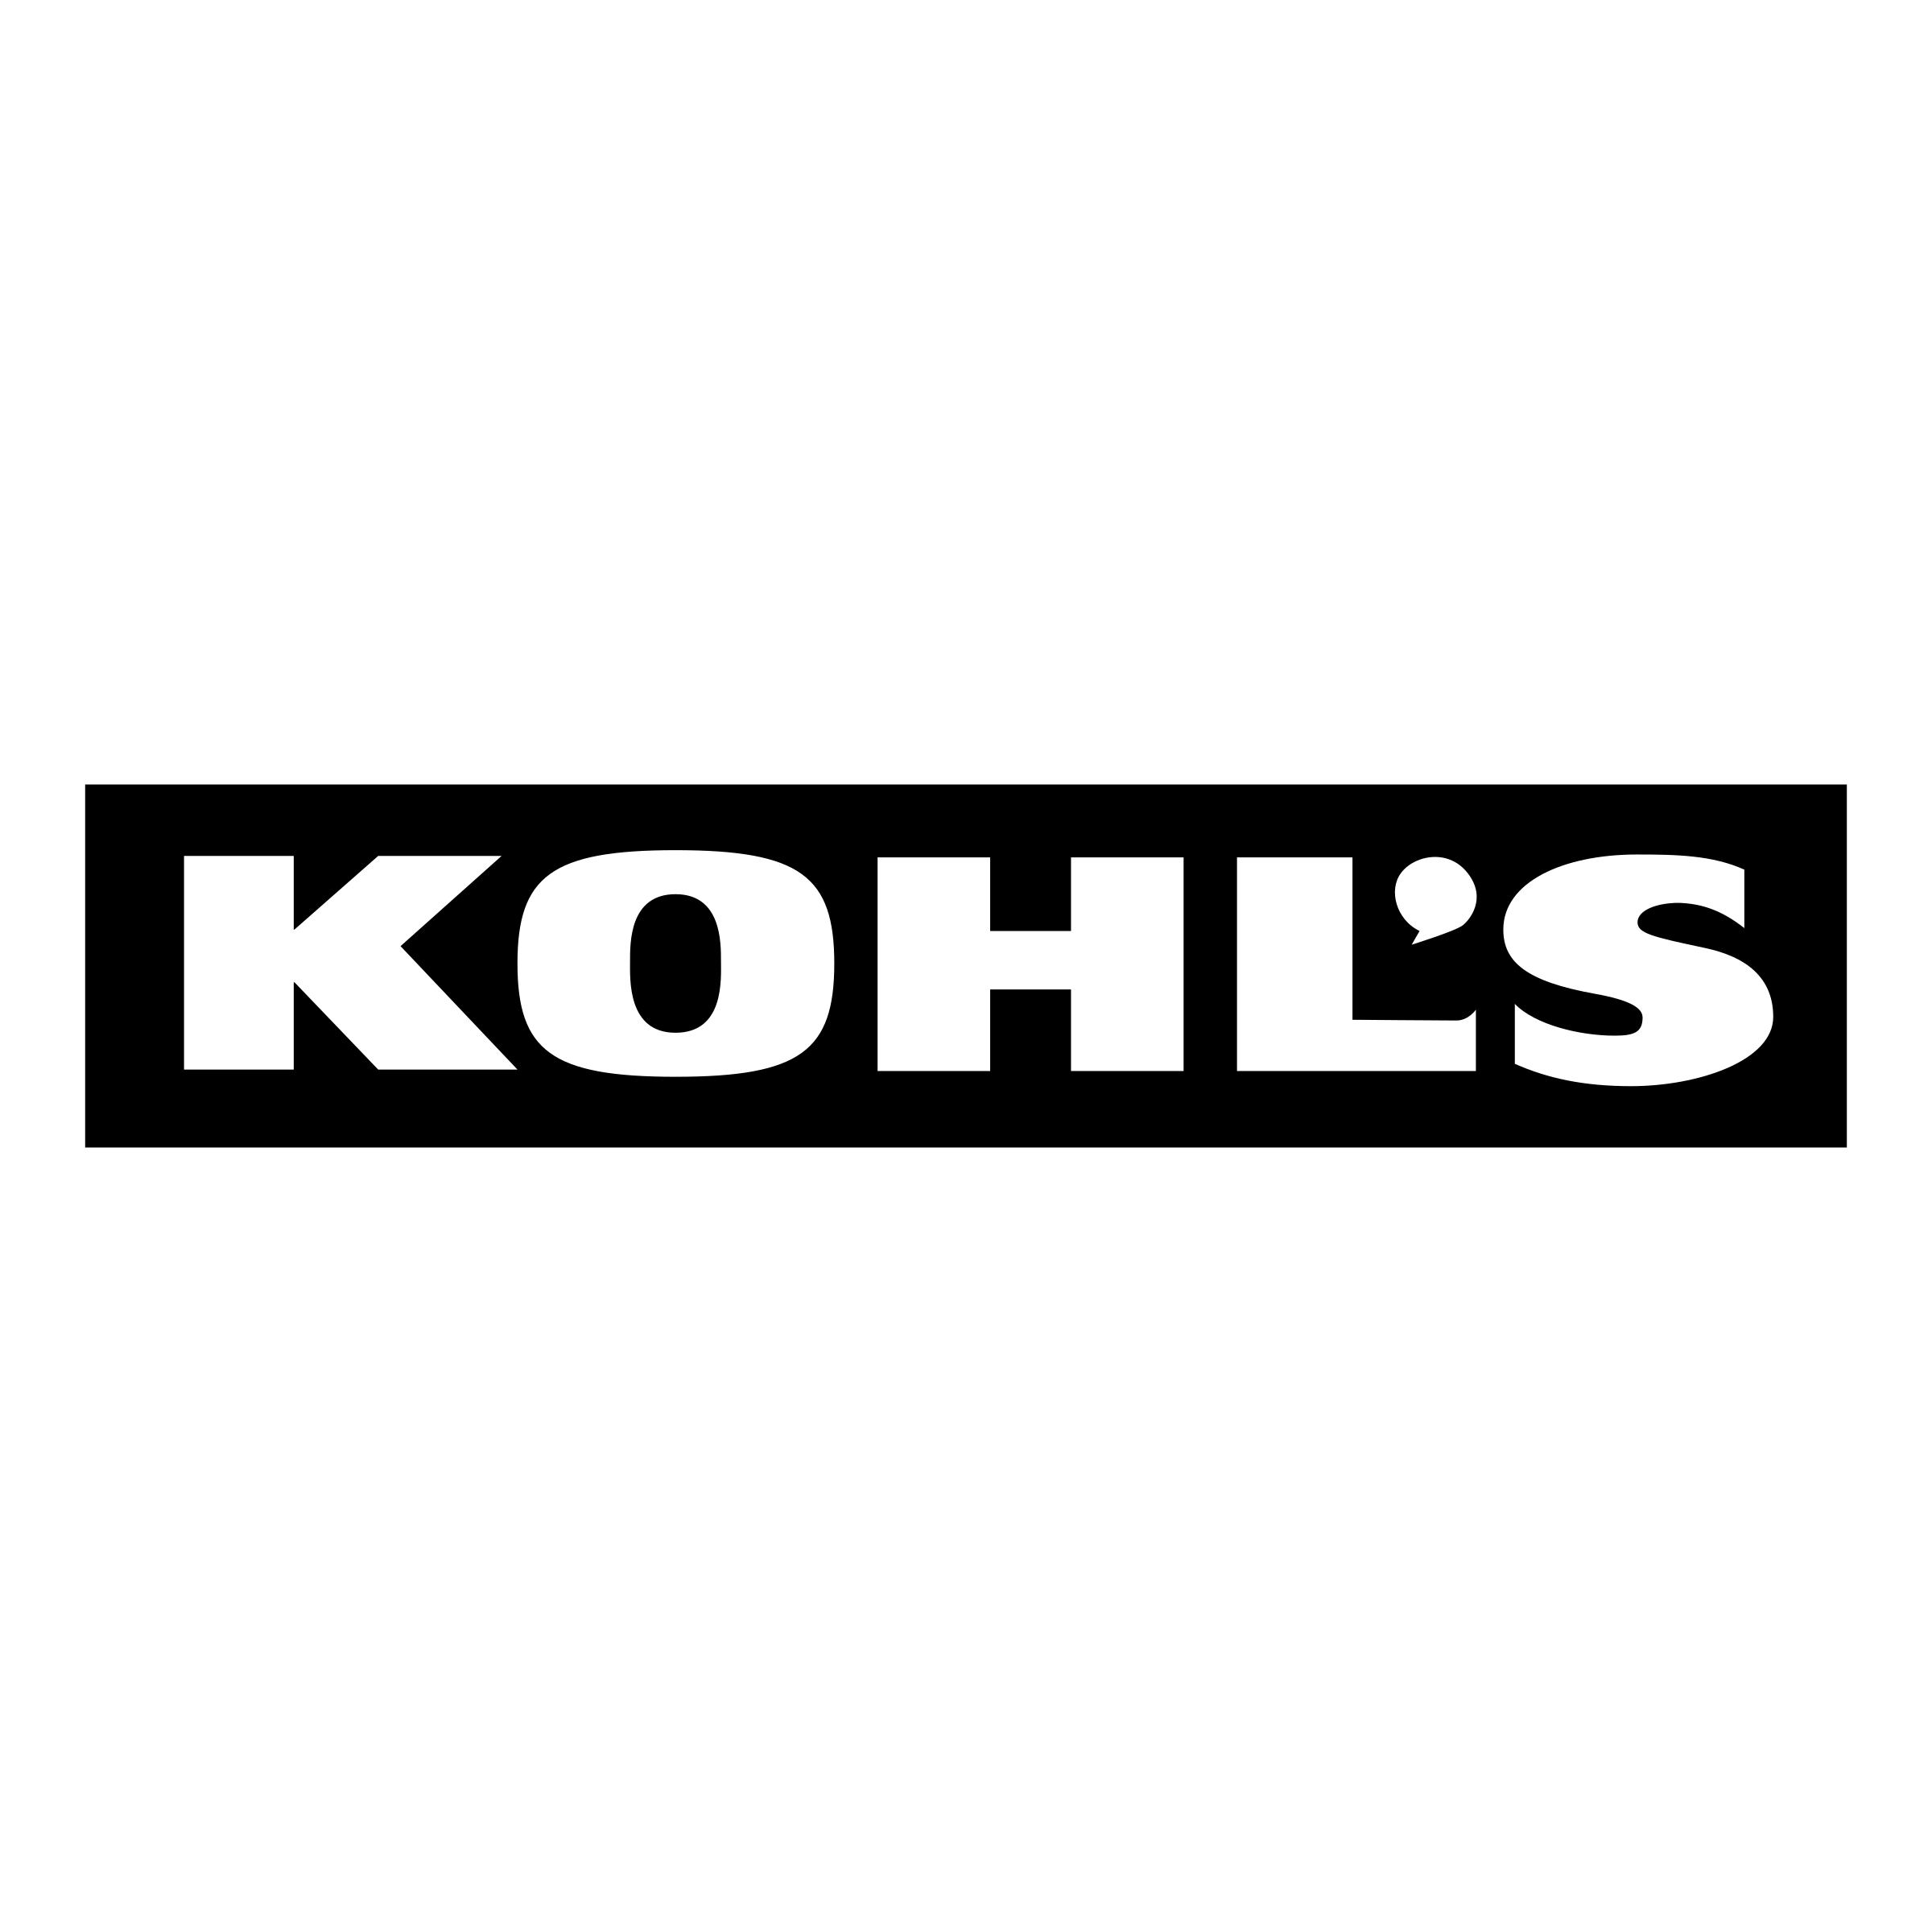 Group-kohlsfeedback-page kohls-1-logo-png-transparent.png